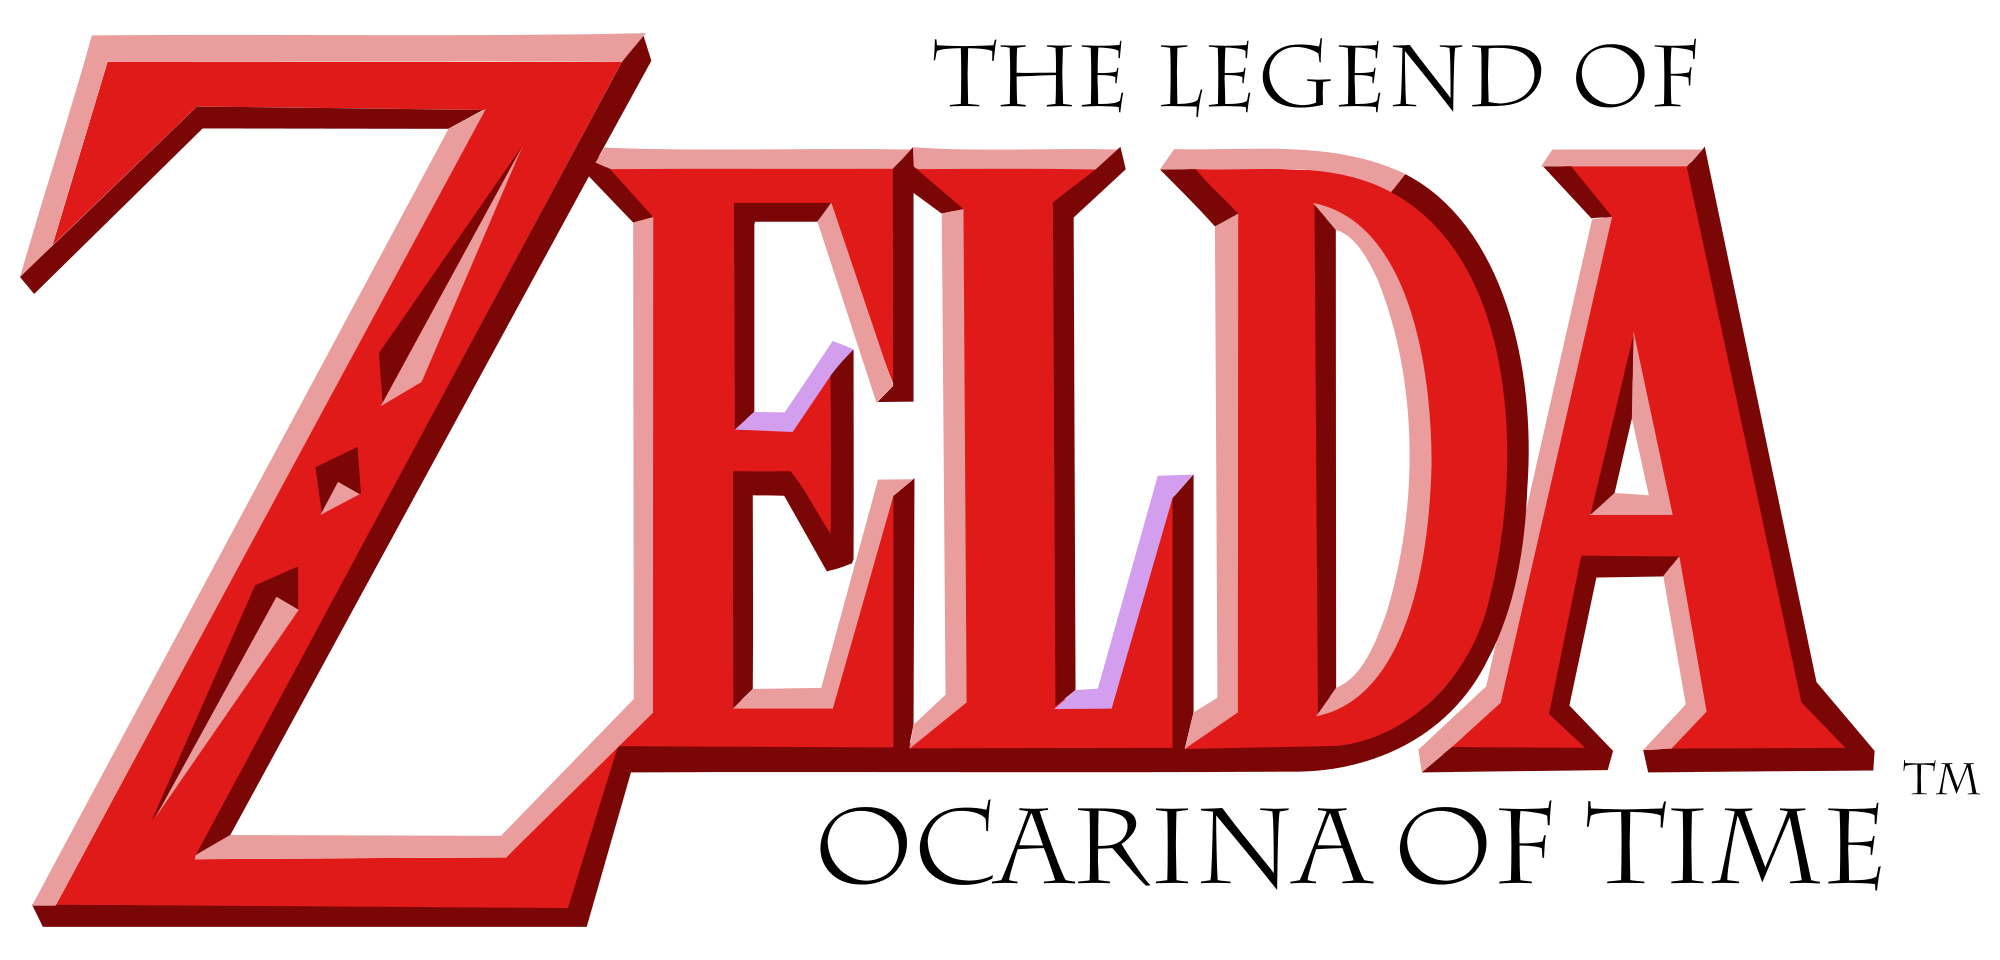 The Legend Of Zelda : Ocarina Of Time The Legend of Zelda is a high-fantasy...